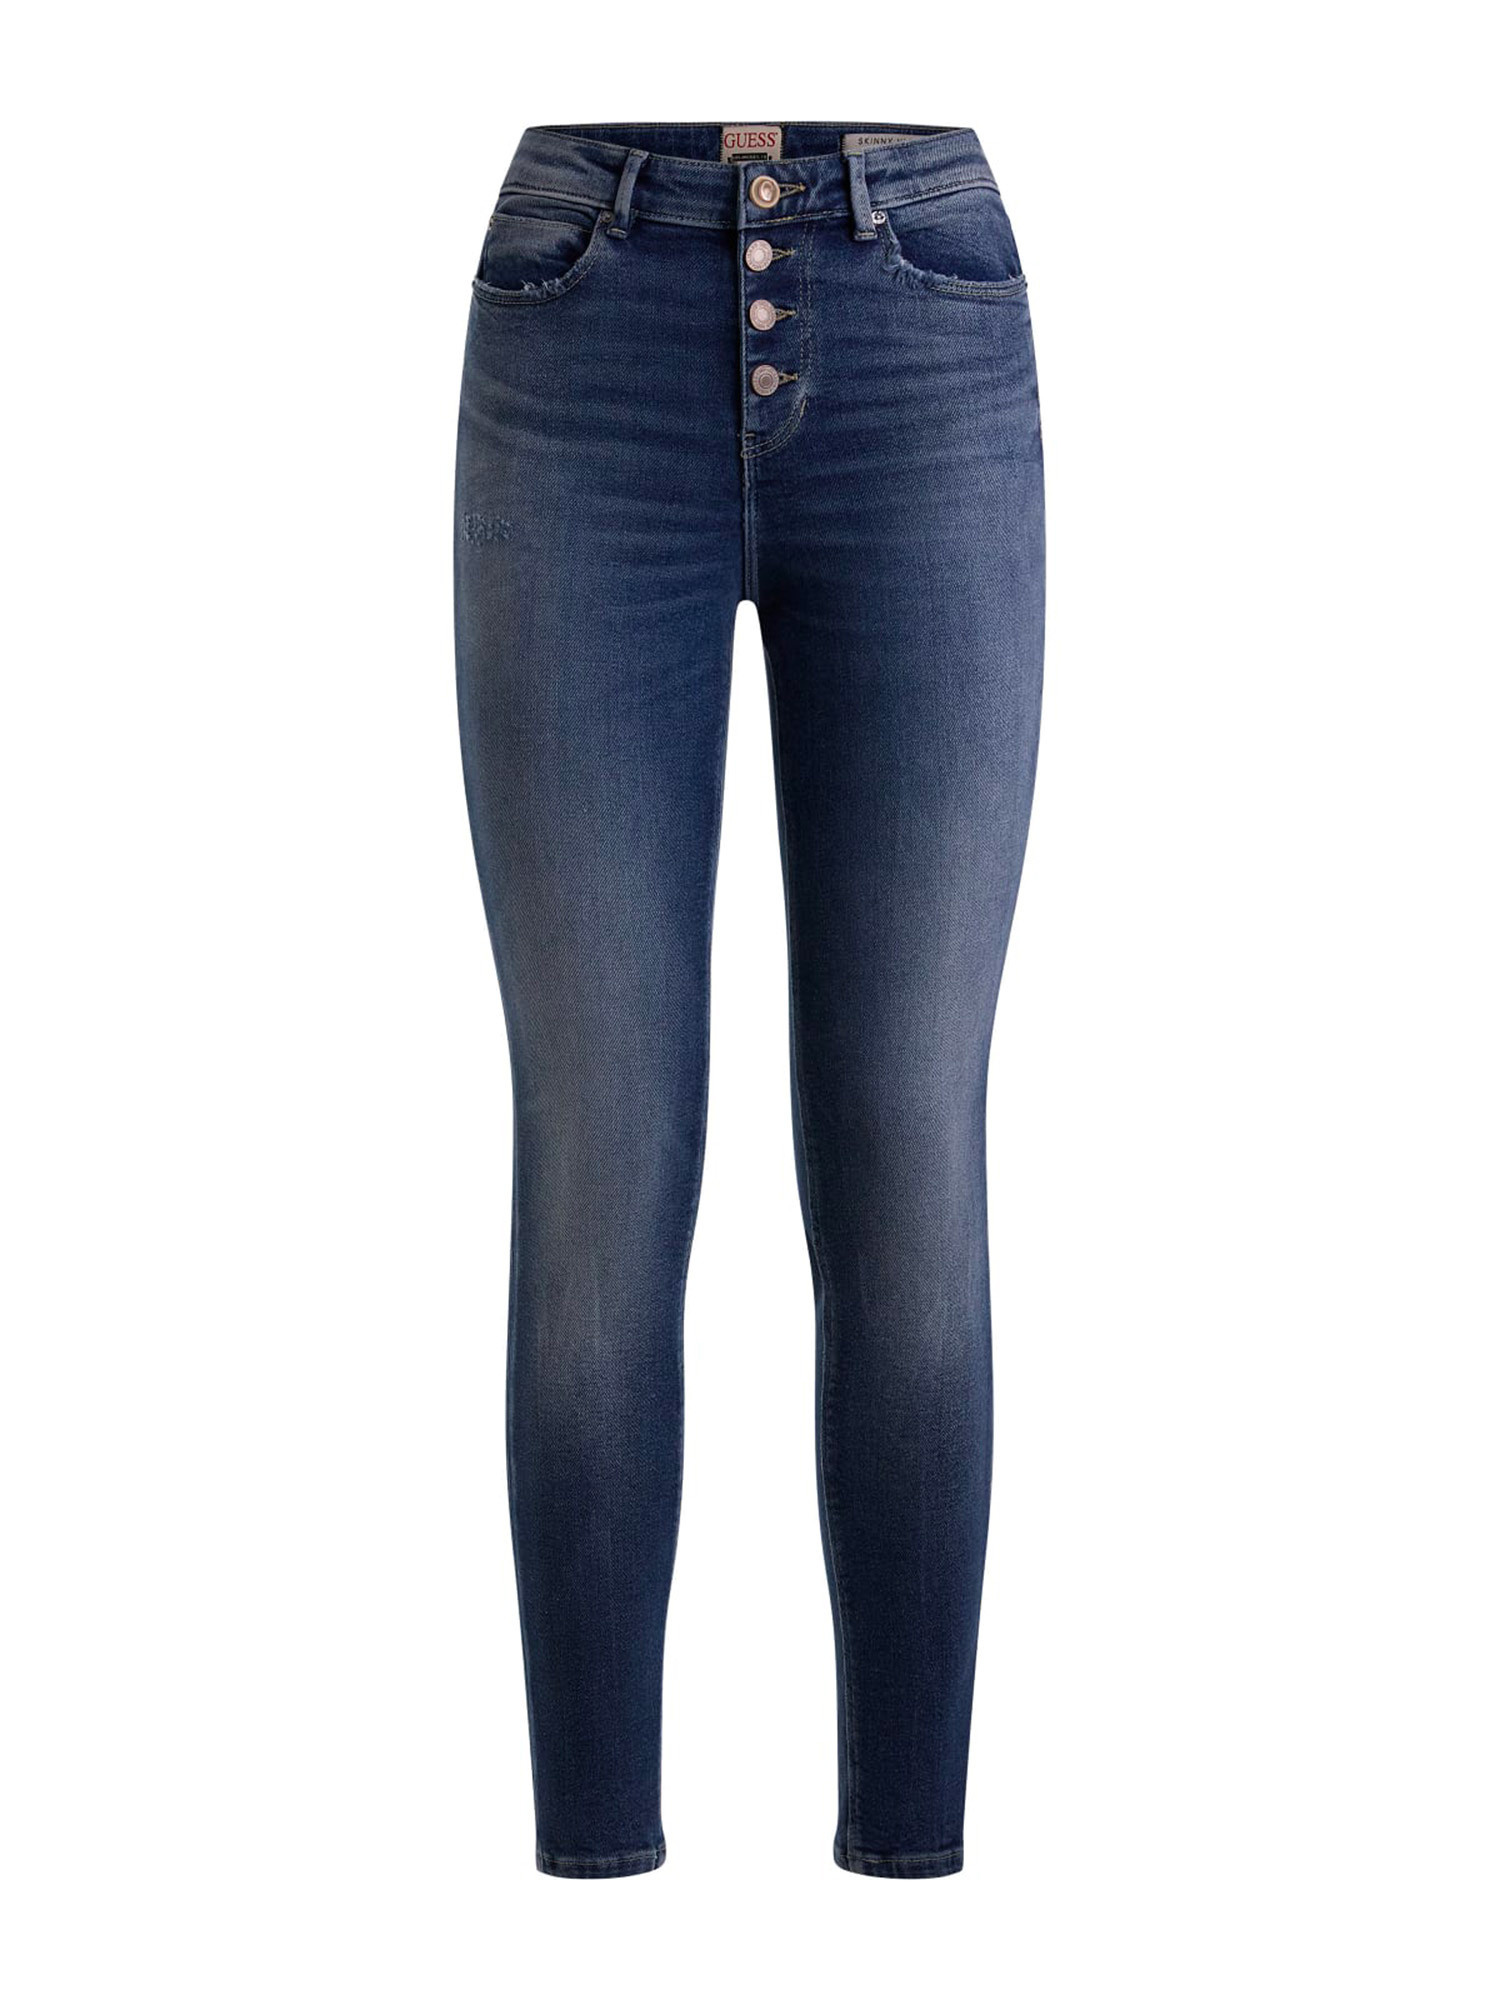 Guess - 5-pocket skinny jeans, Denim, large image number 0